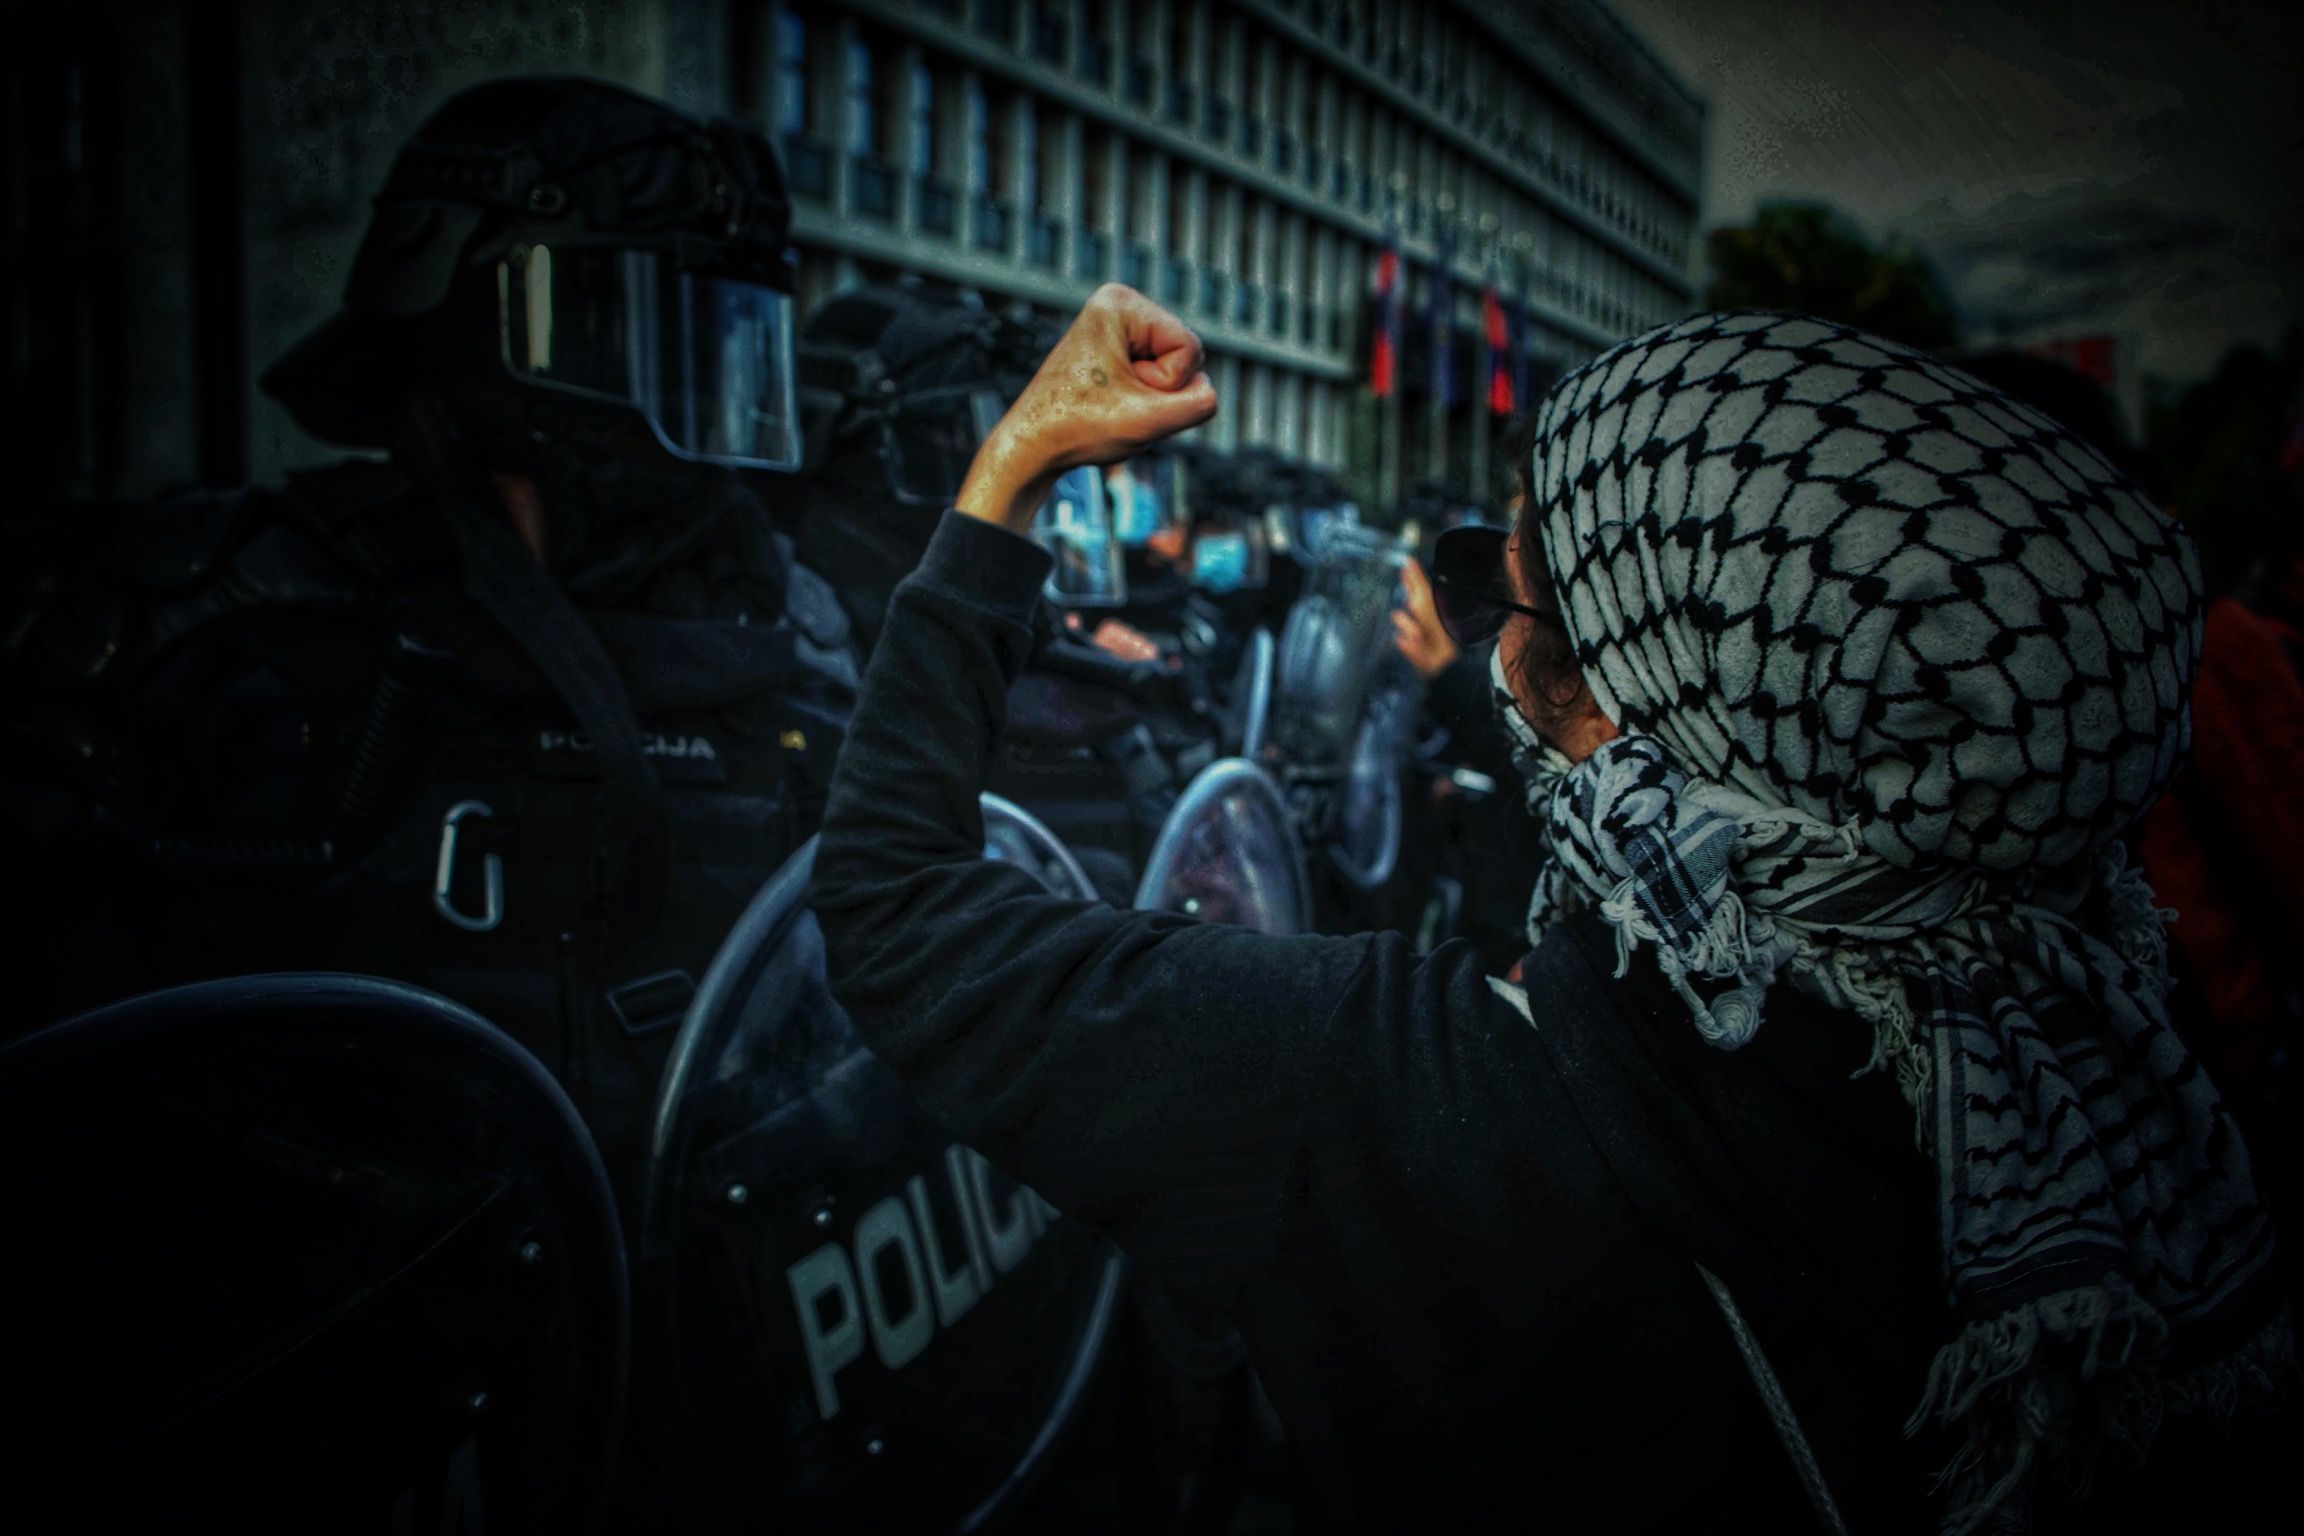 photojournalism press uprising protesters, Gašper Lešnik